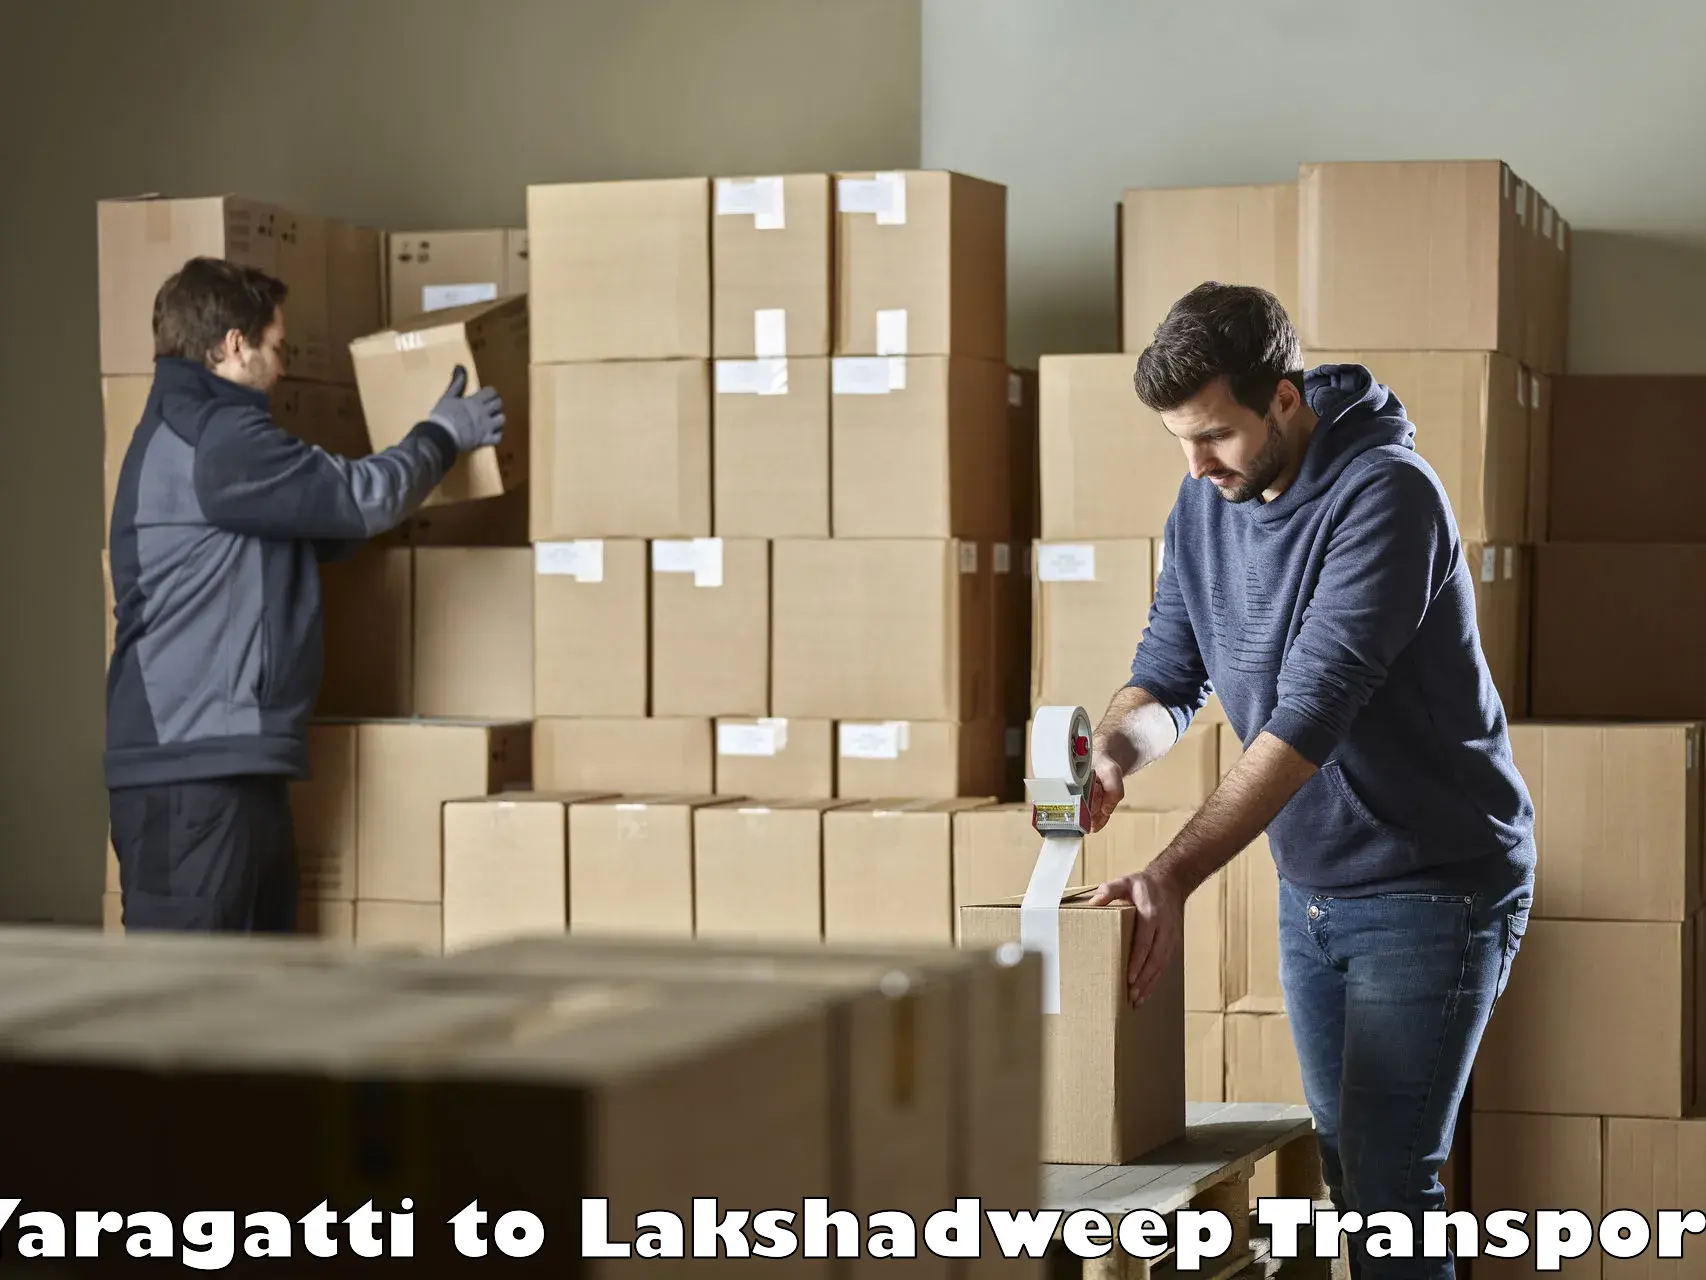 Online transport Yaragatti to Lakshadweep